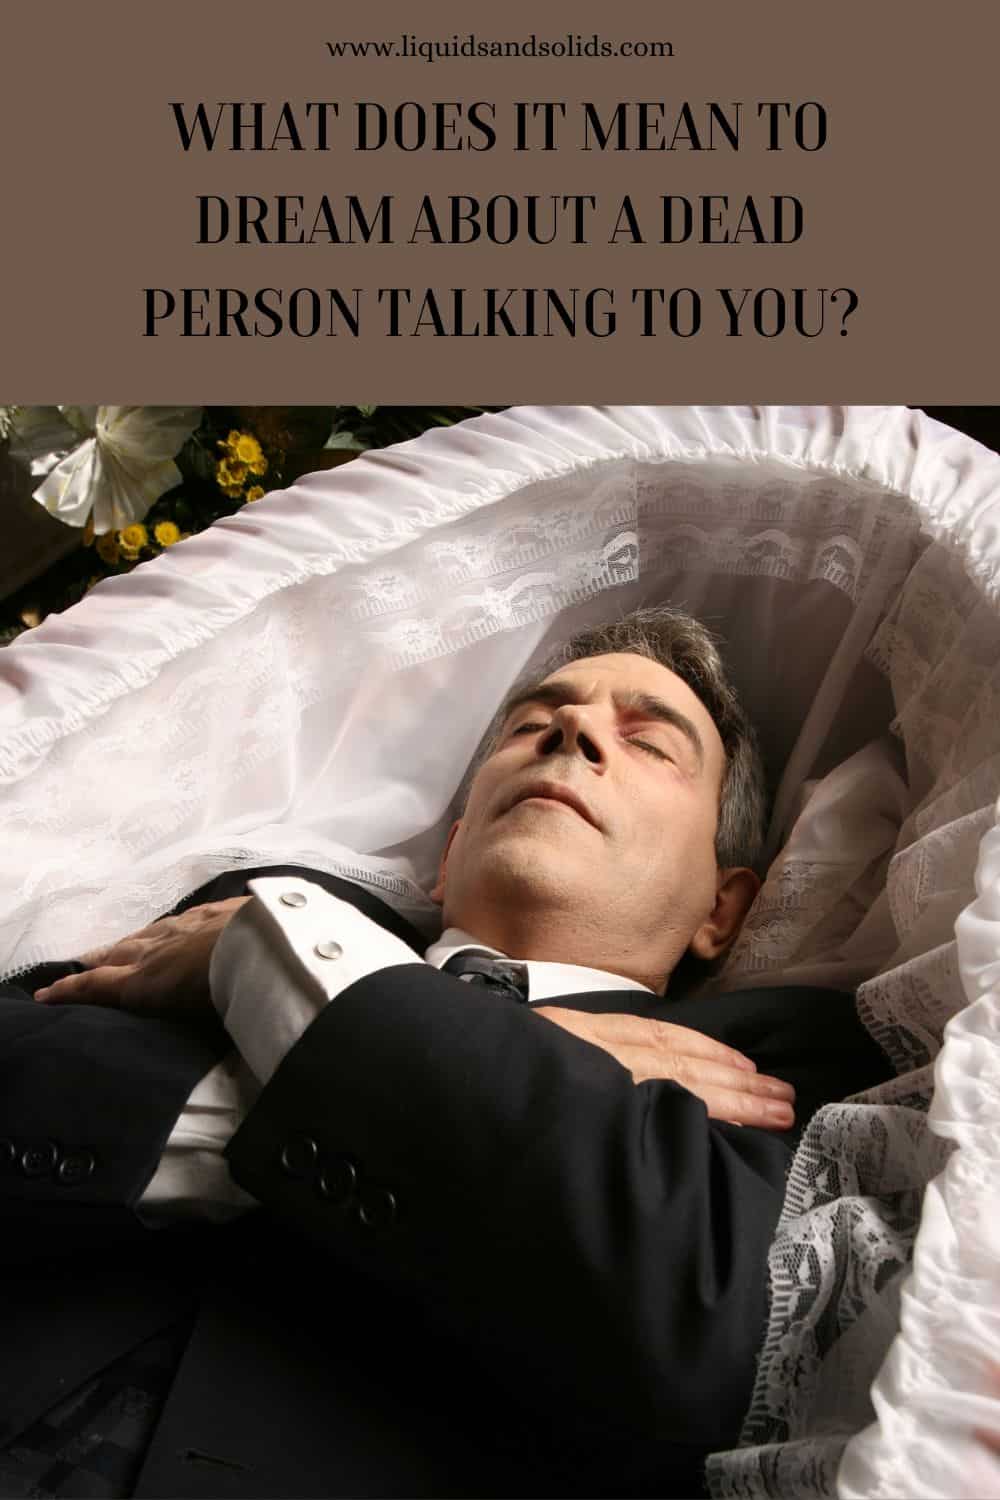  Rêve d'une personne décédée qui vous parle (7 significations spirituelles)